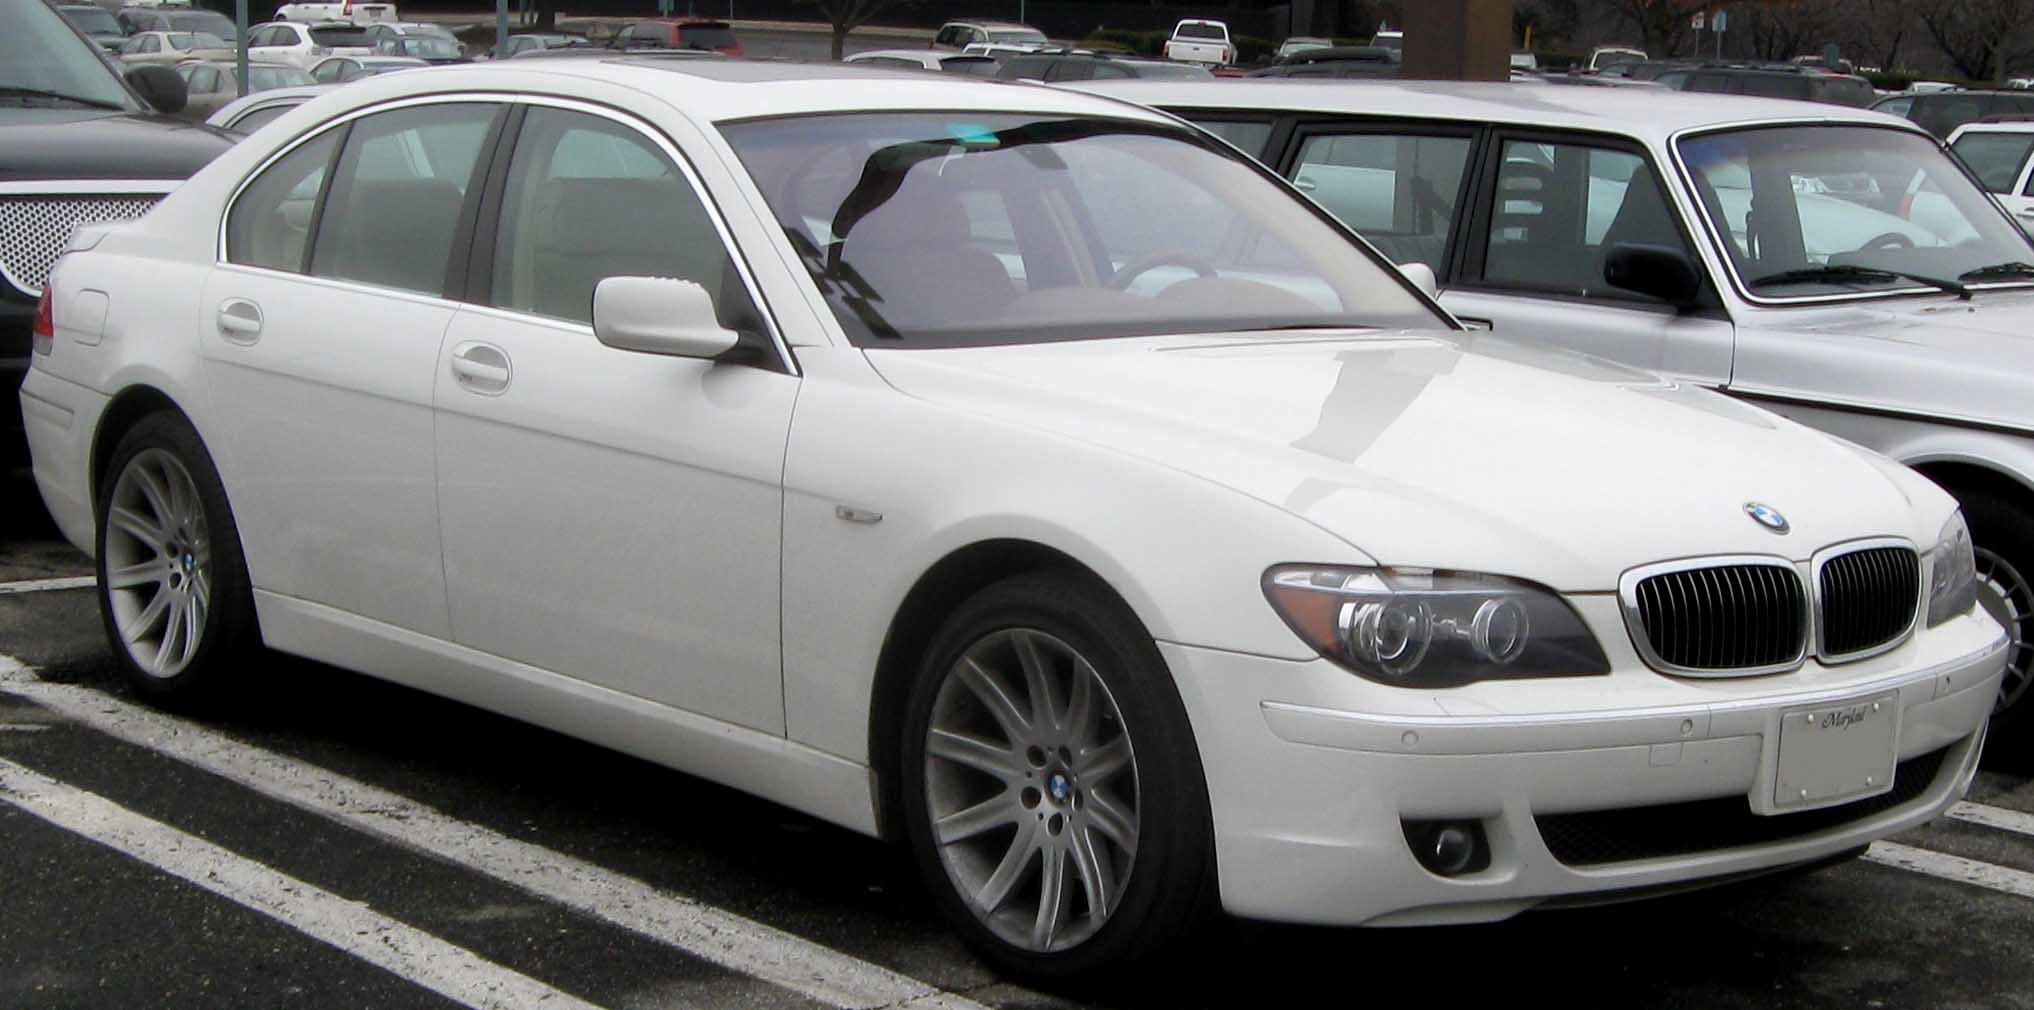 BMW 750i â€“ Front Angle, 2006